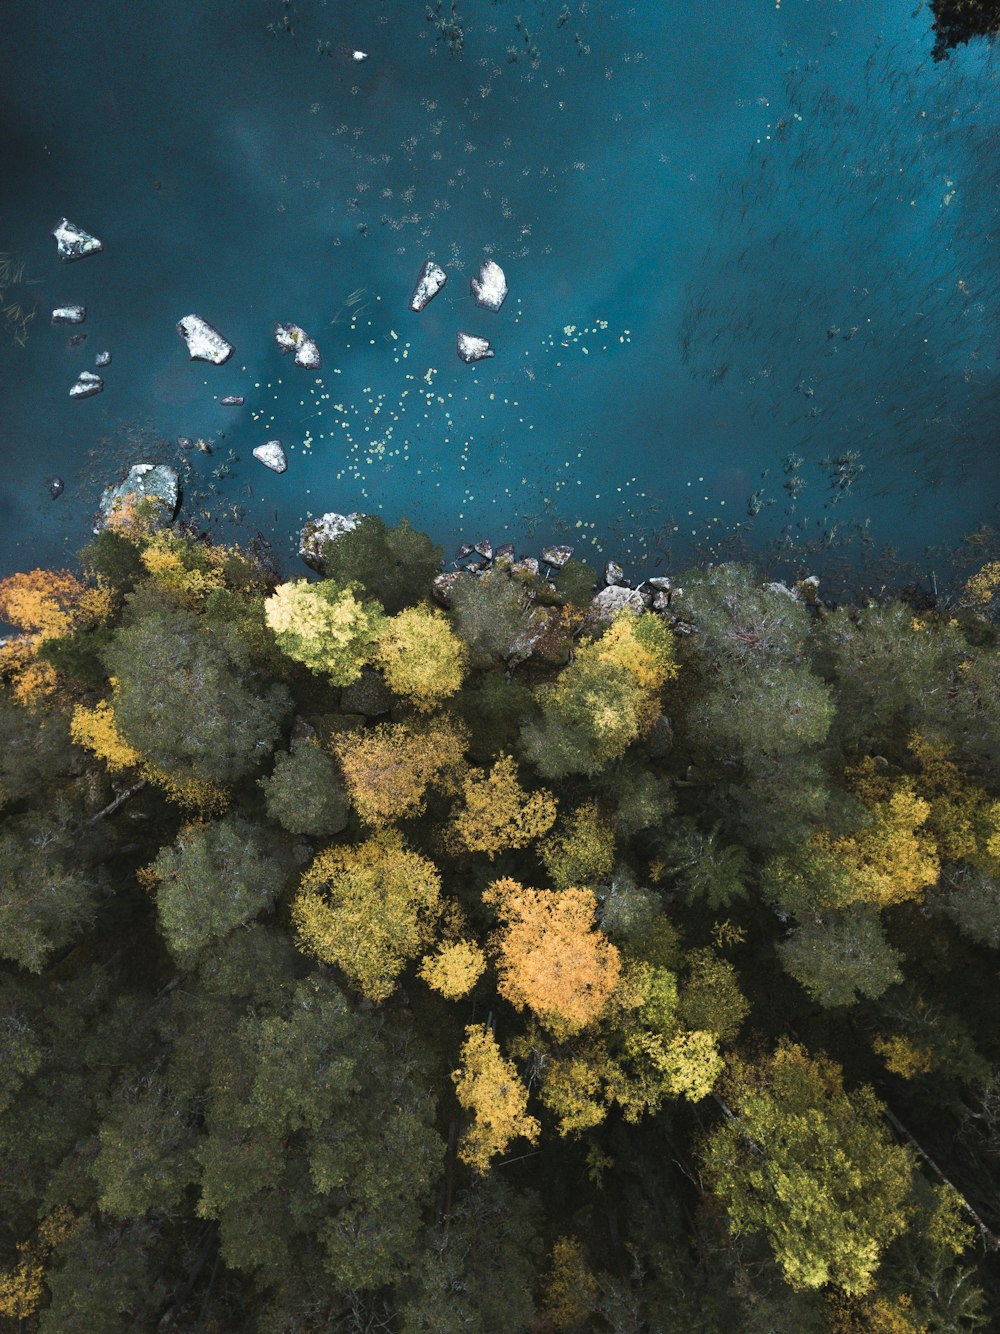 Luftaufnahme eines Gewässers in der Nähe von Bäumen